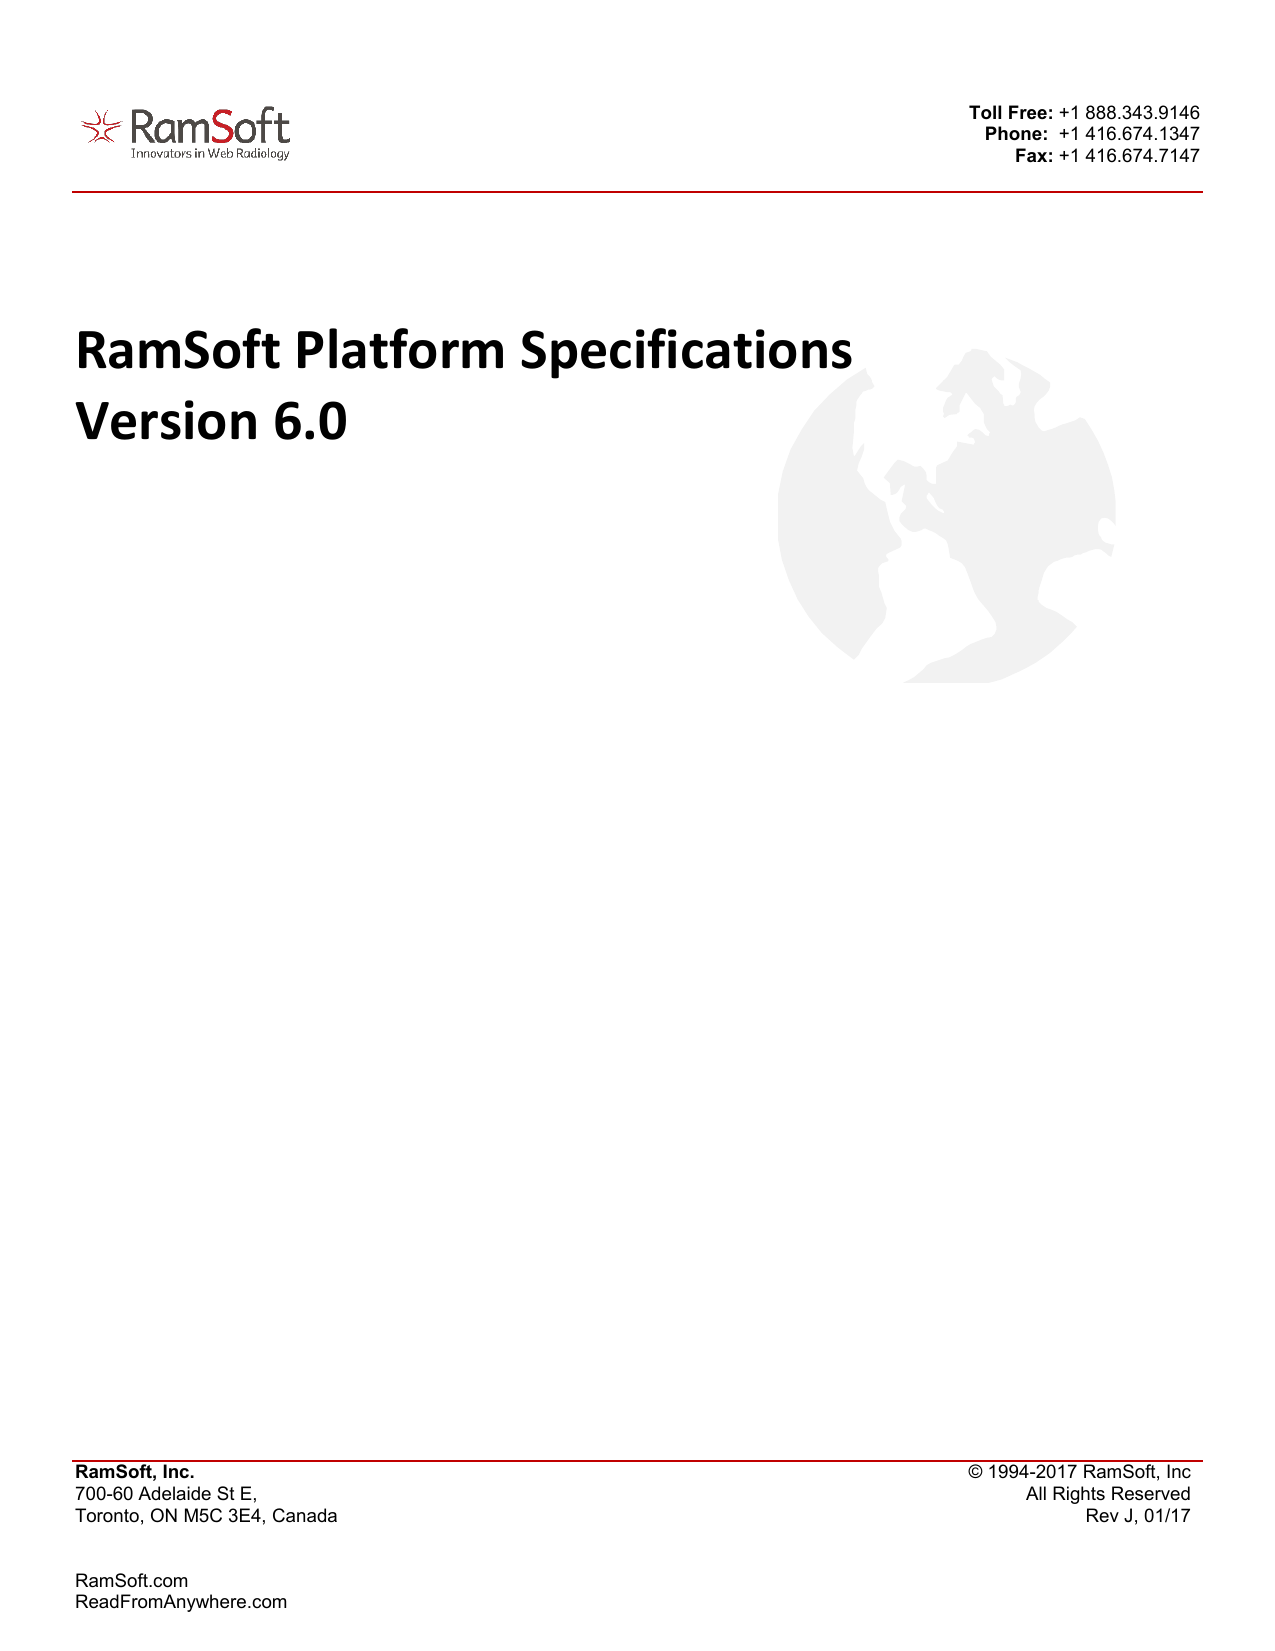 ramsoft powerreader cd viewer 6.0 install fail